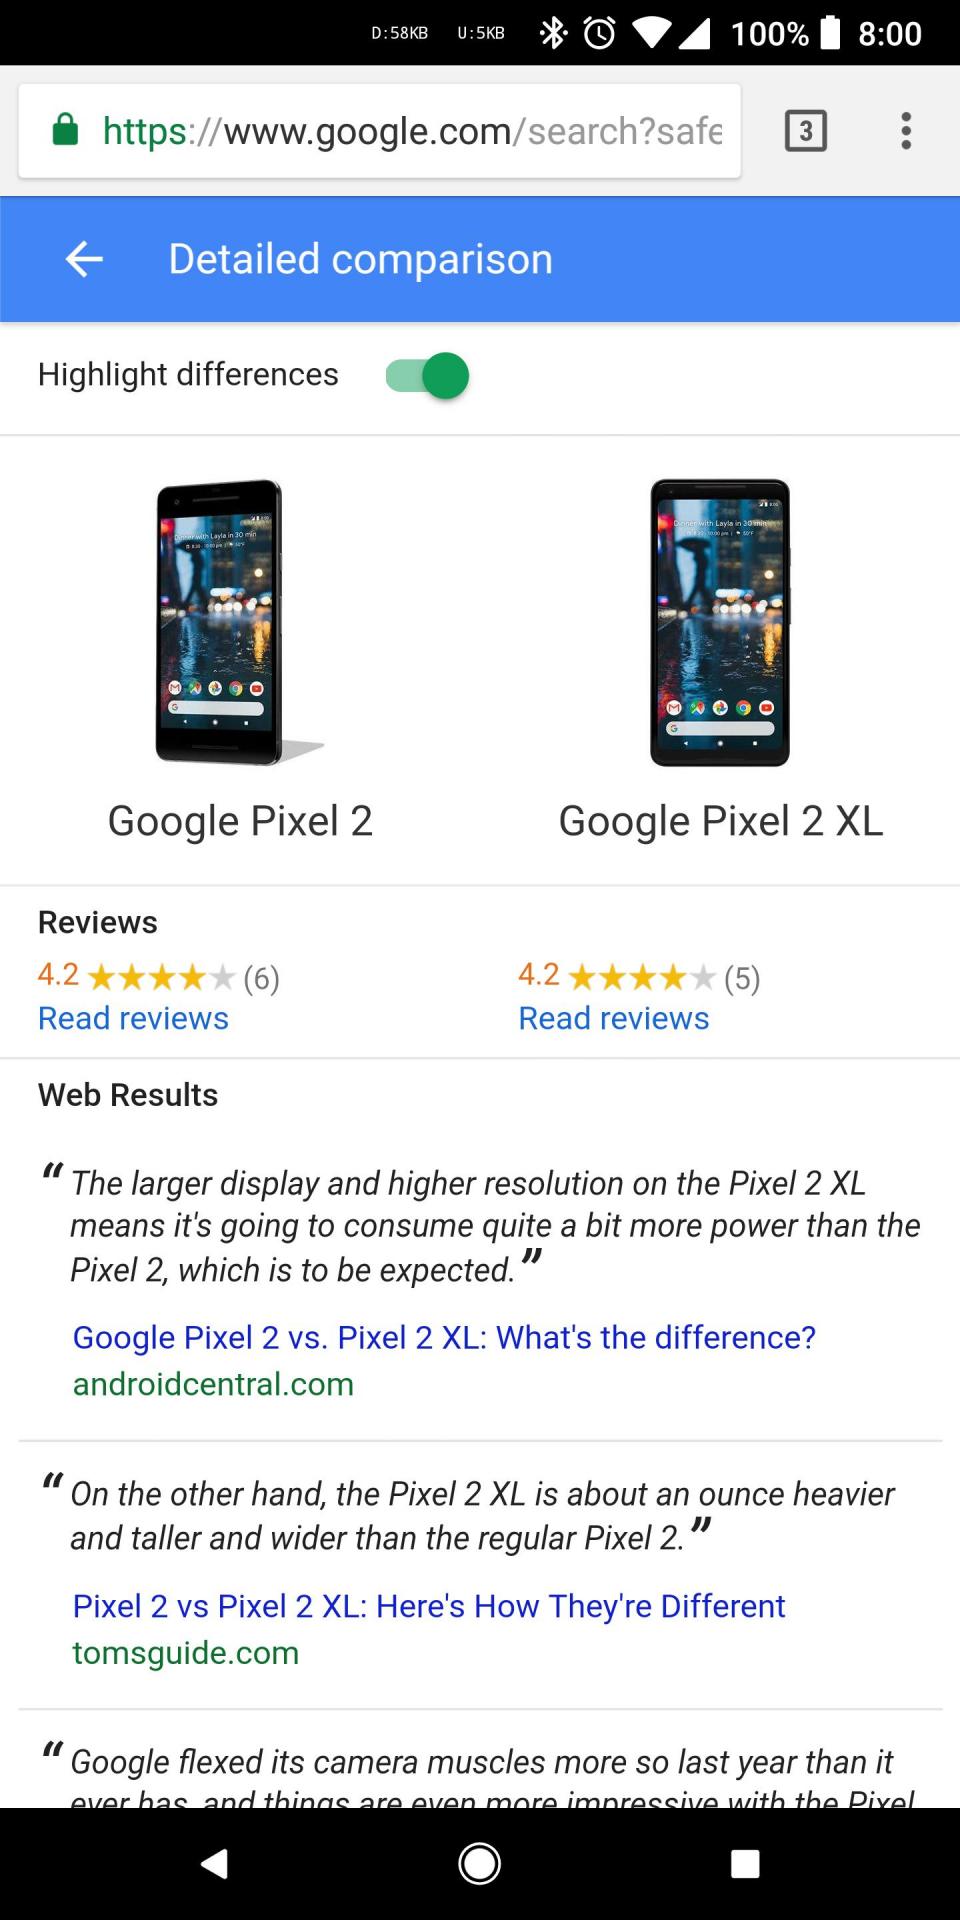 Спецификации двух товаров можно сравнить прямо в поиске Google